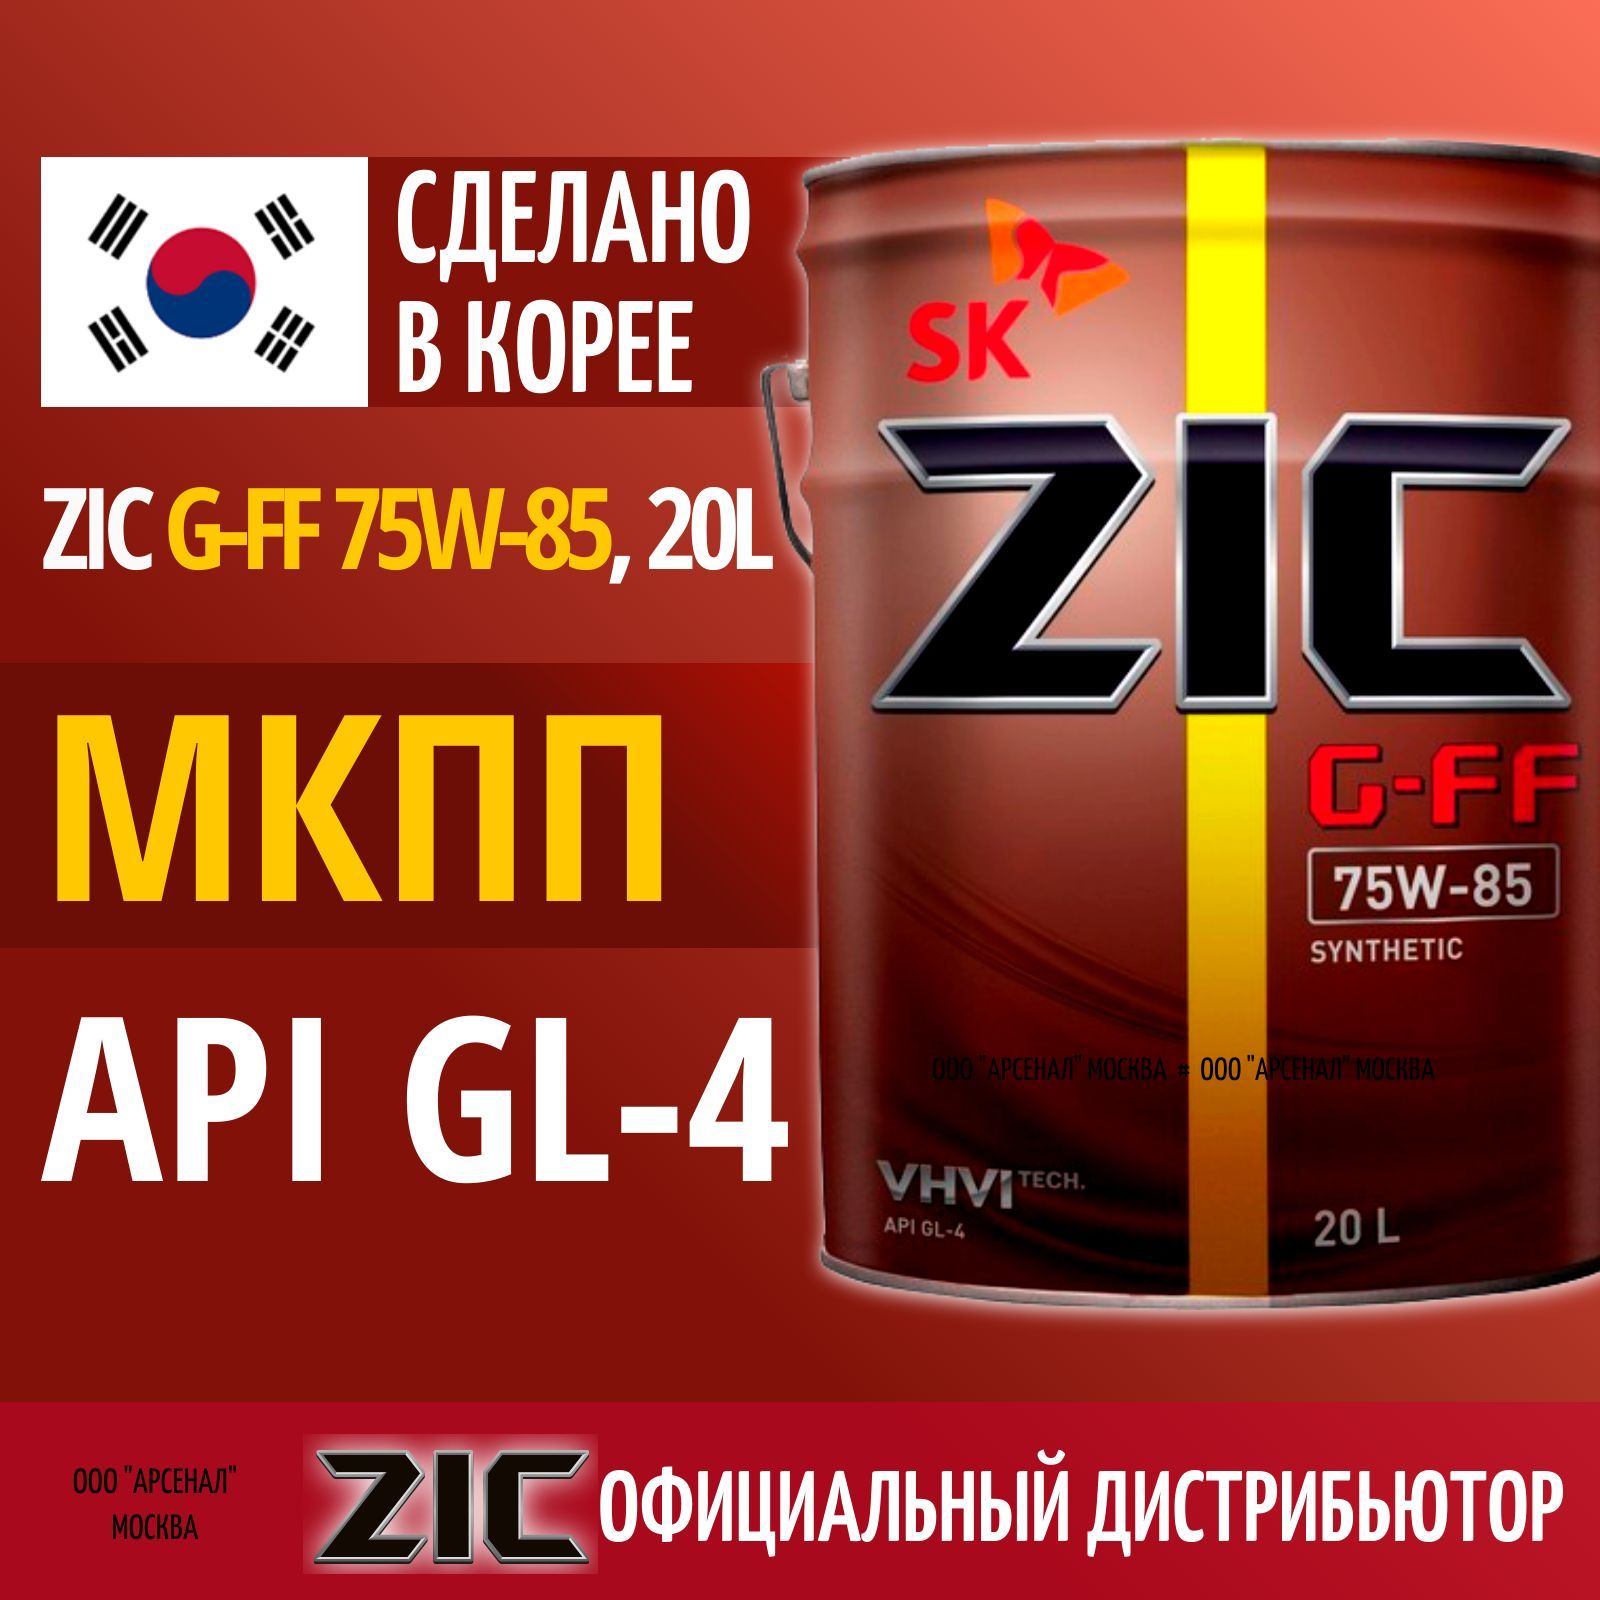 ZIC G-FF 75w-85 200л. Zic g ff 75w85